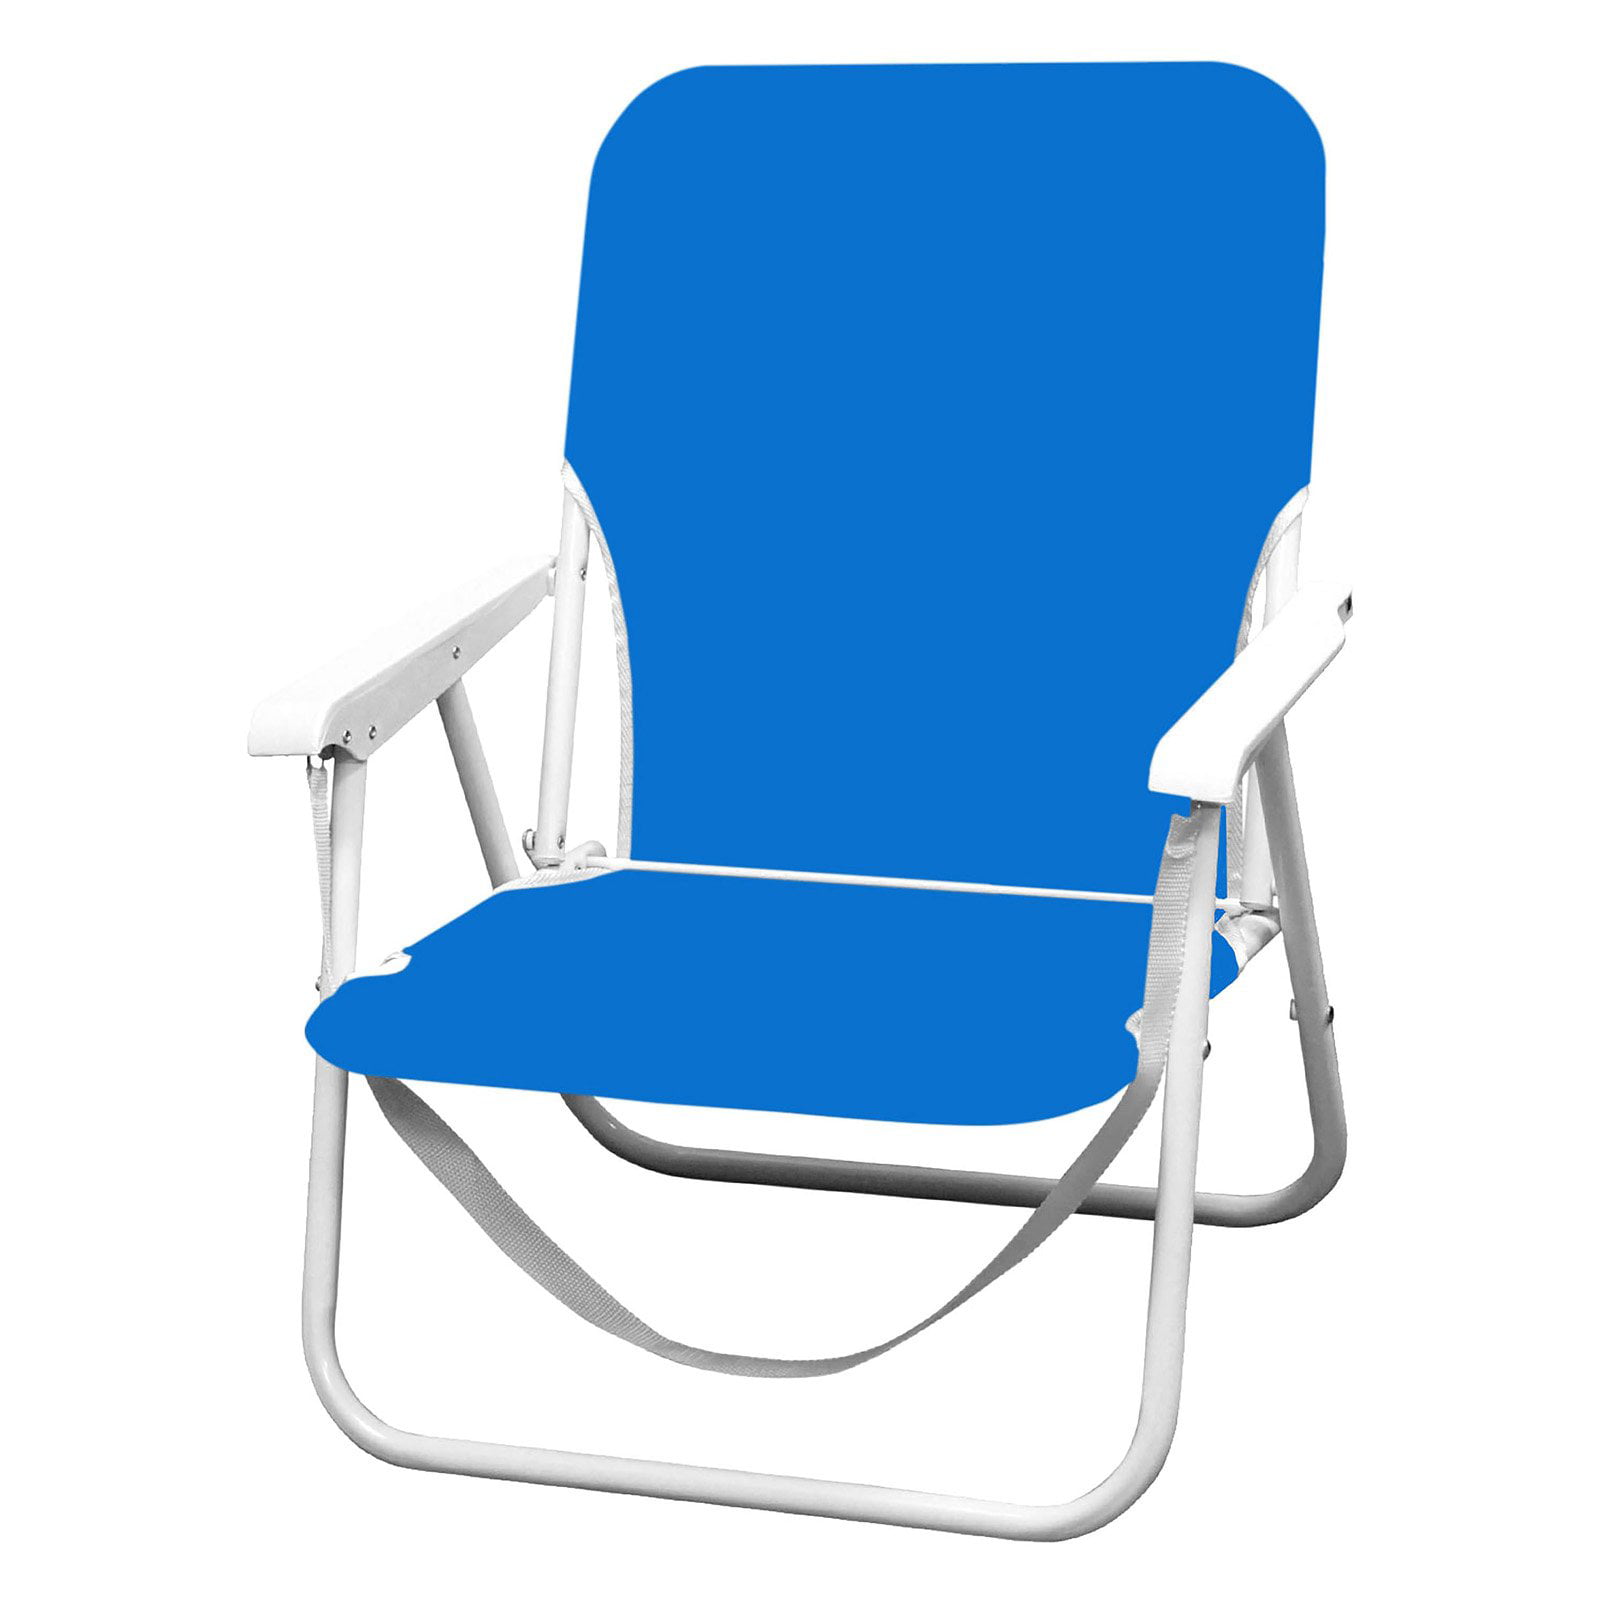 Minimalist Caribbean Joe Beach Chair with Simple Decor